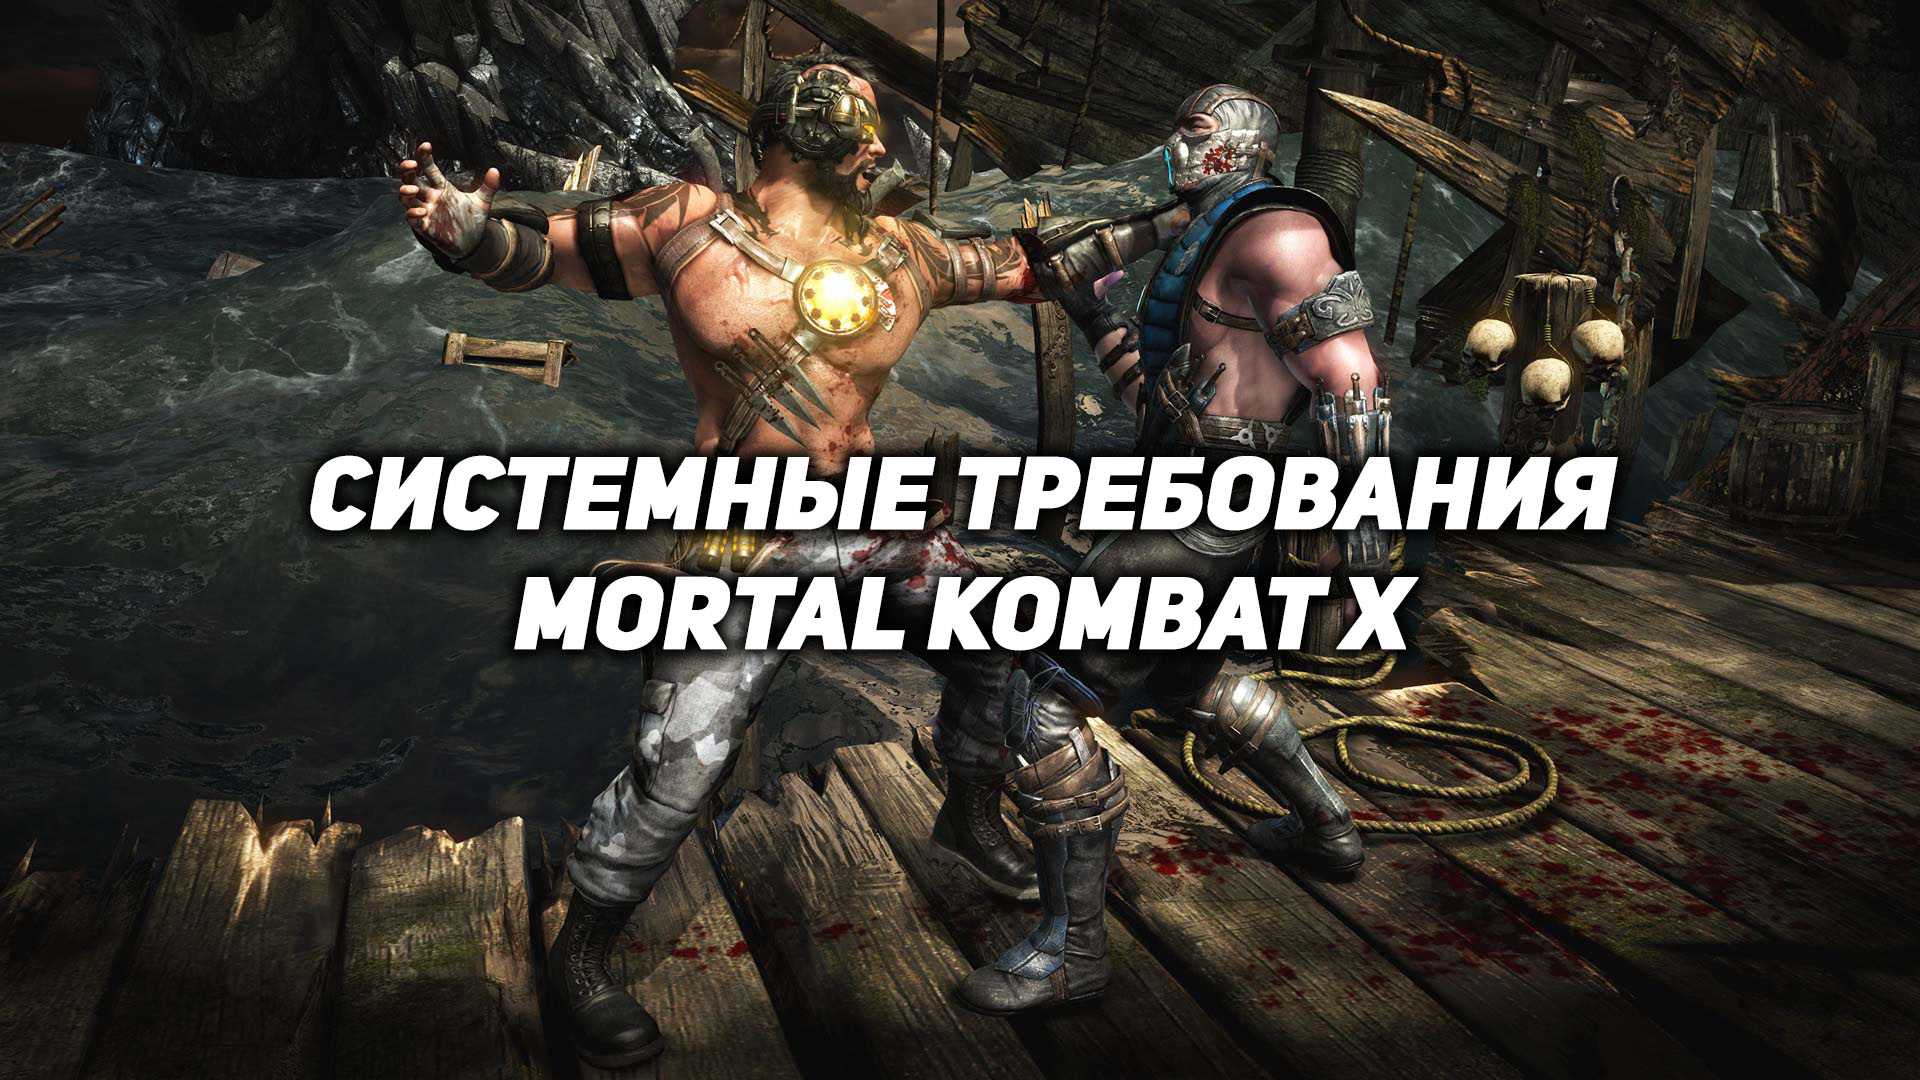 Требования мк 11. Системные требования МК 10. Минимальные системные требования Mortal Kombat 11. Mortal Kombat 10 минимальные требования. Мортал комбат системные требования.